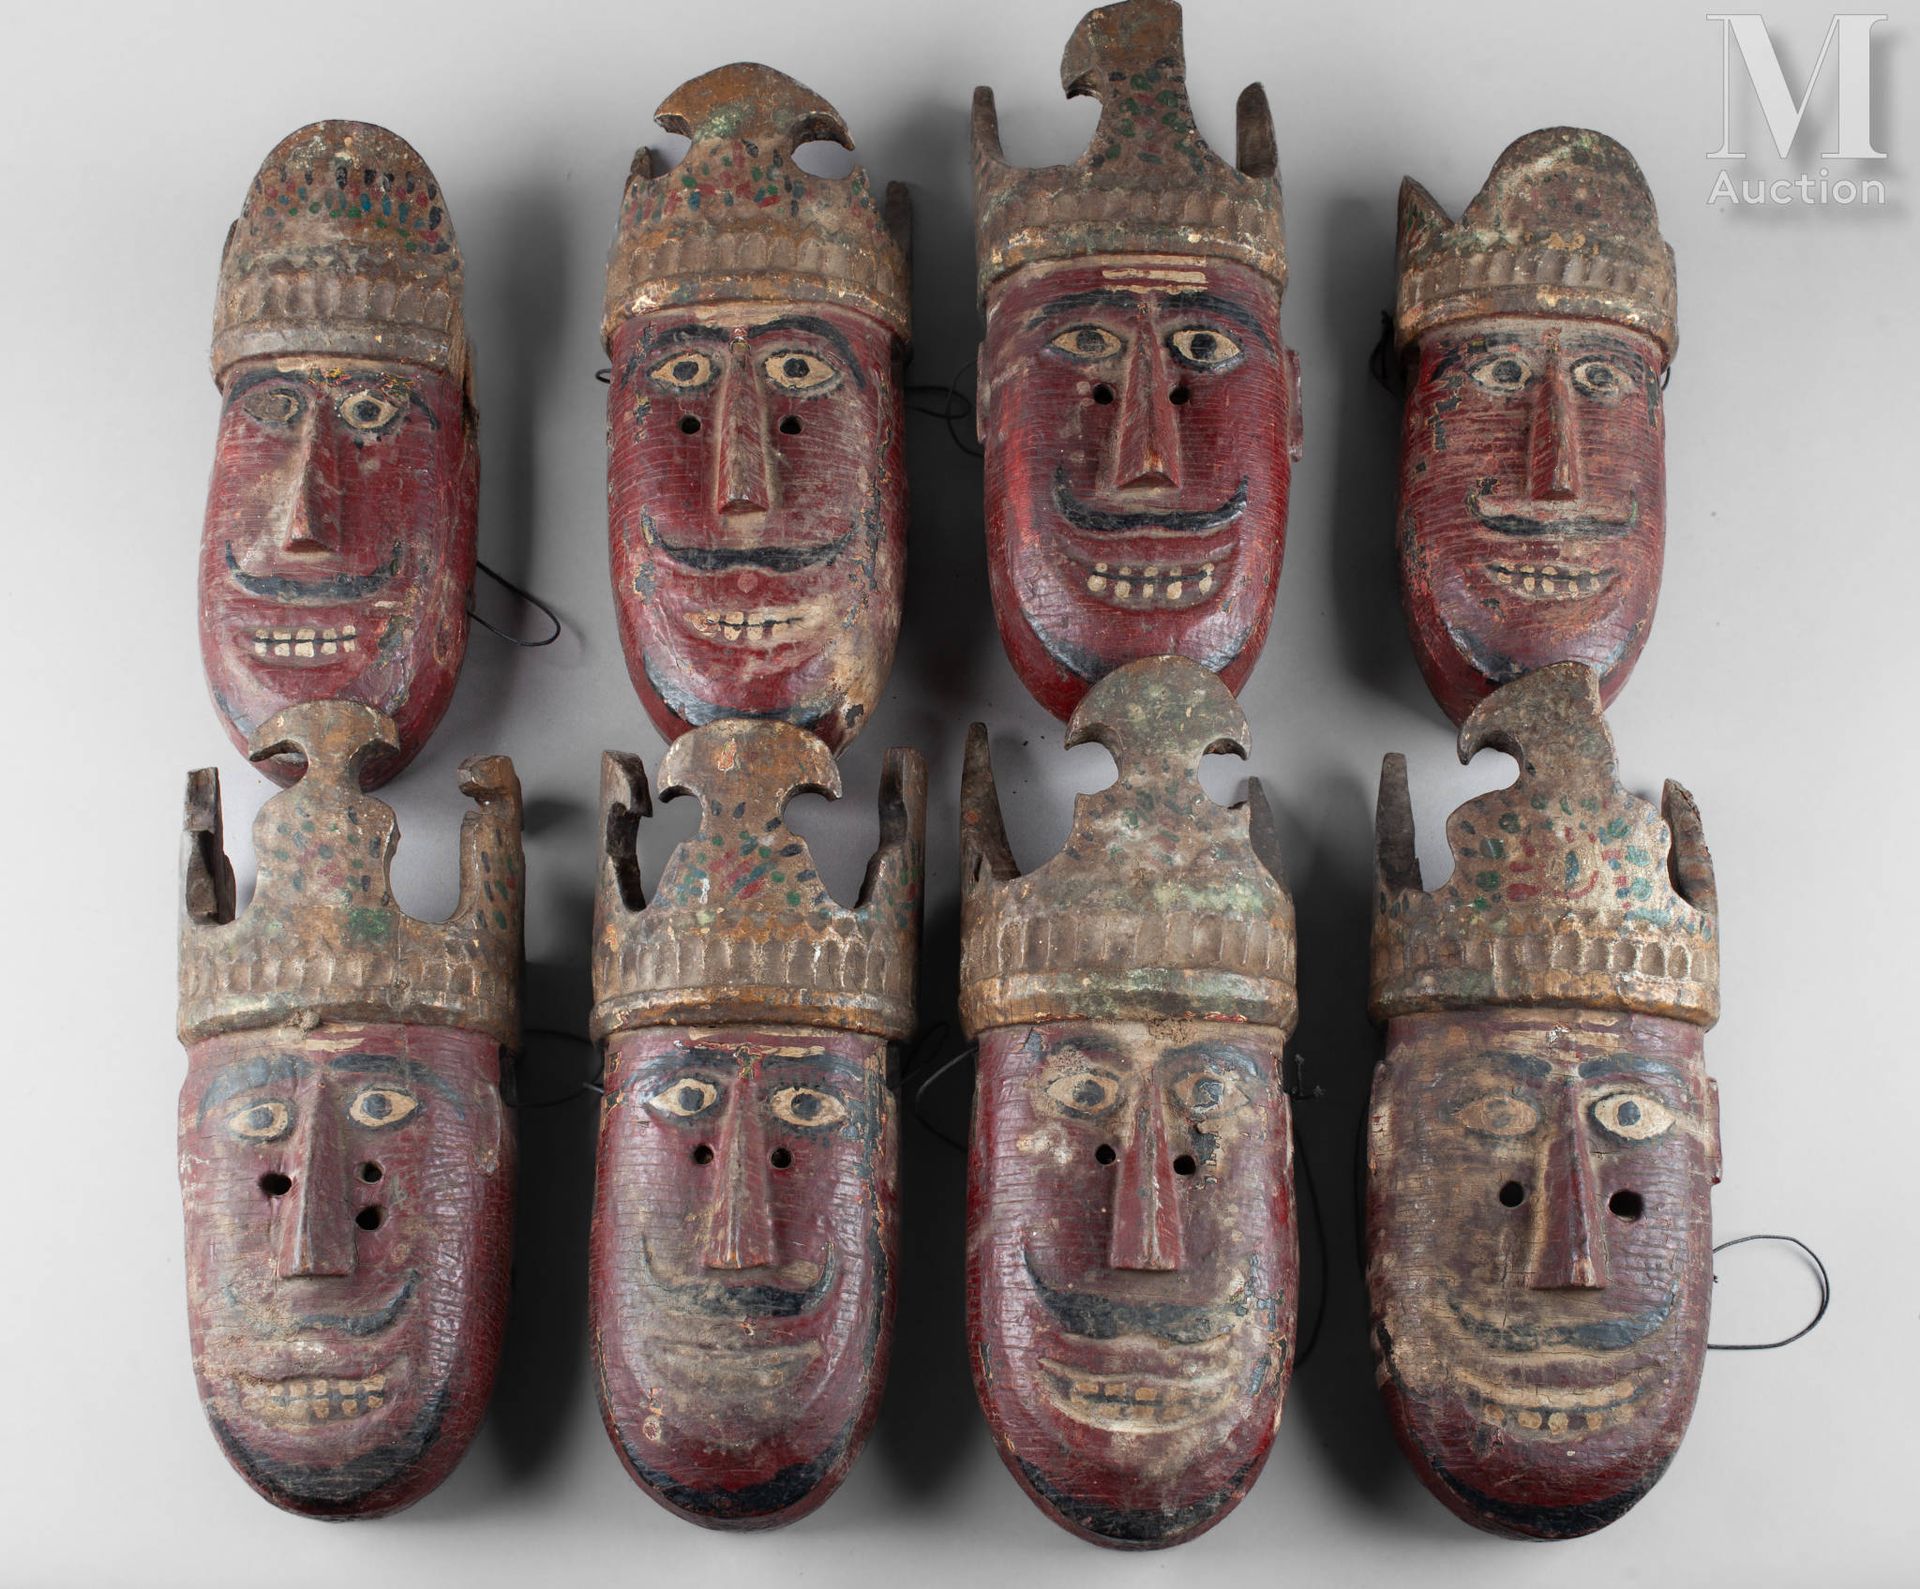 Huit masques En bois polychrome
Népal
H : environ 30 cm